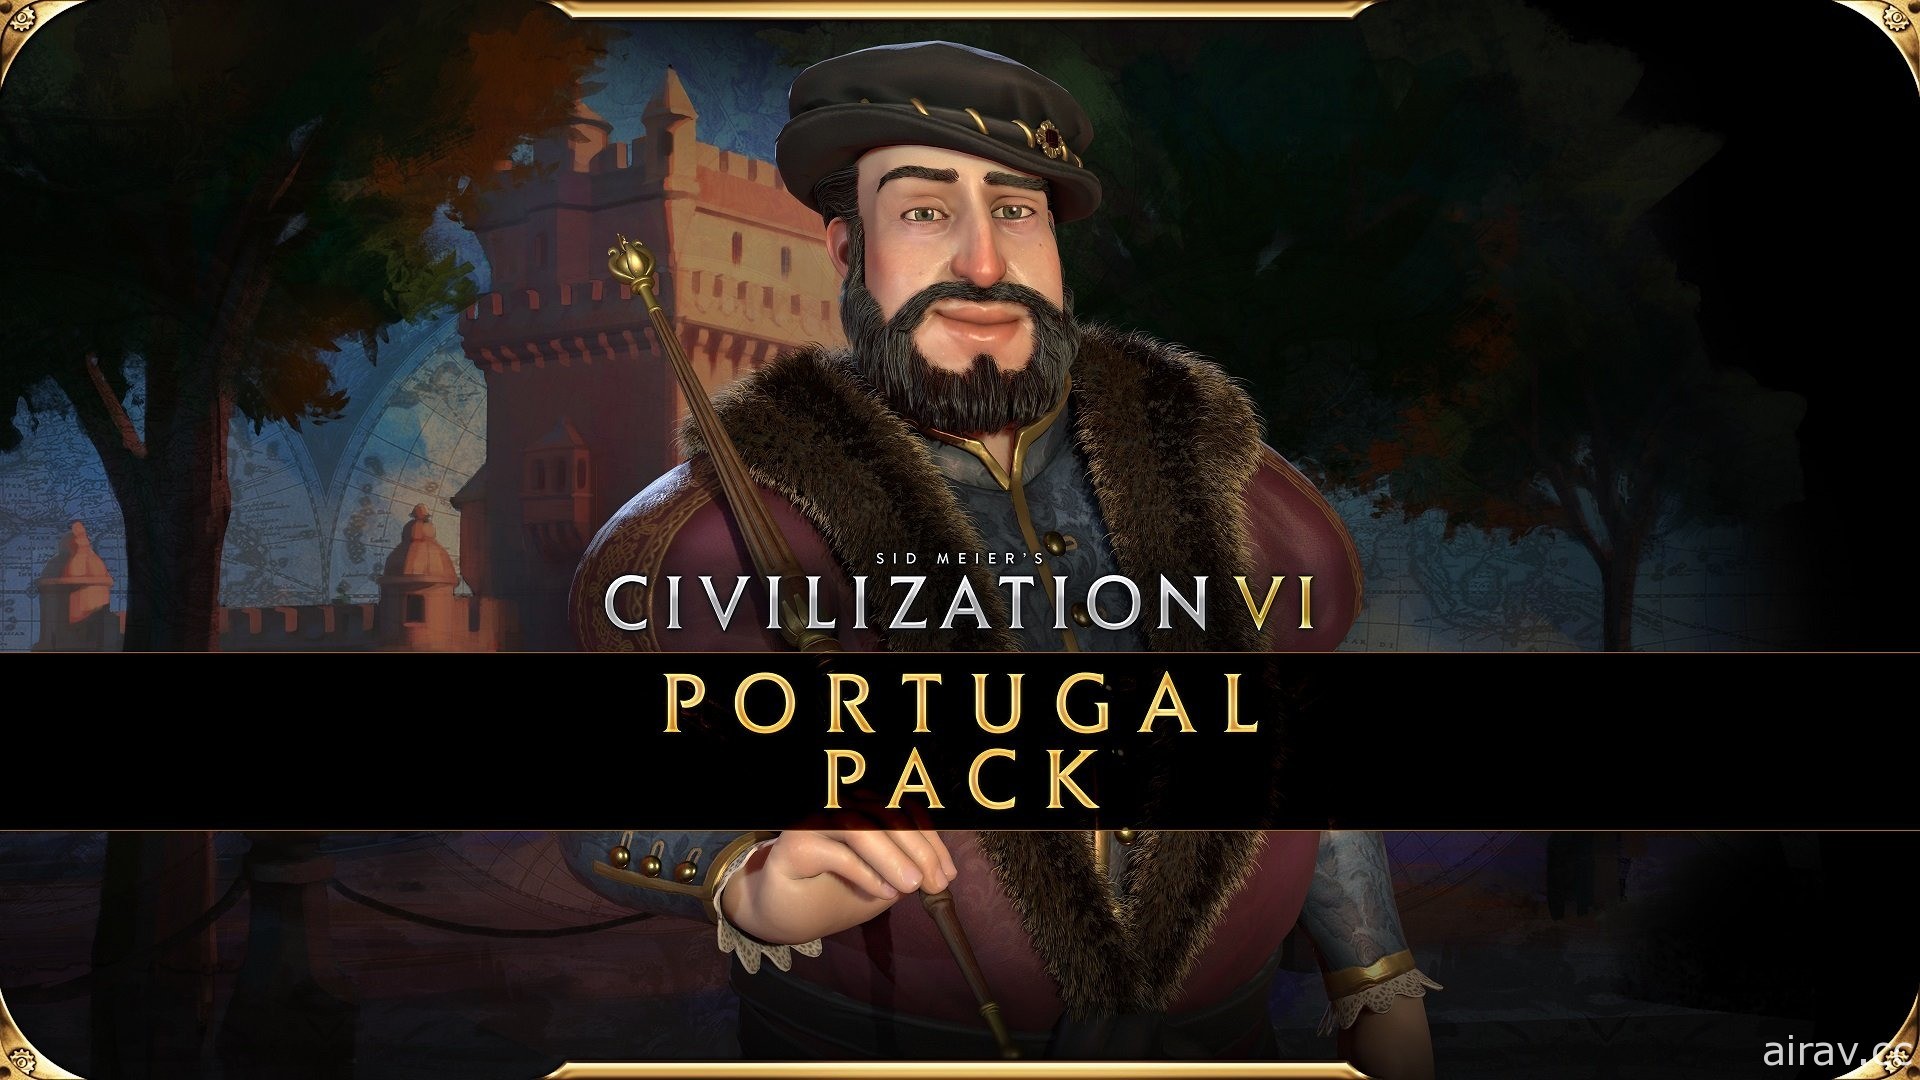 《文明帝国 6》揭开葡萄牙领袖“约翰三世”介绍影片 拥有 2 栋特色基础建设